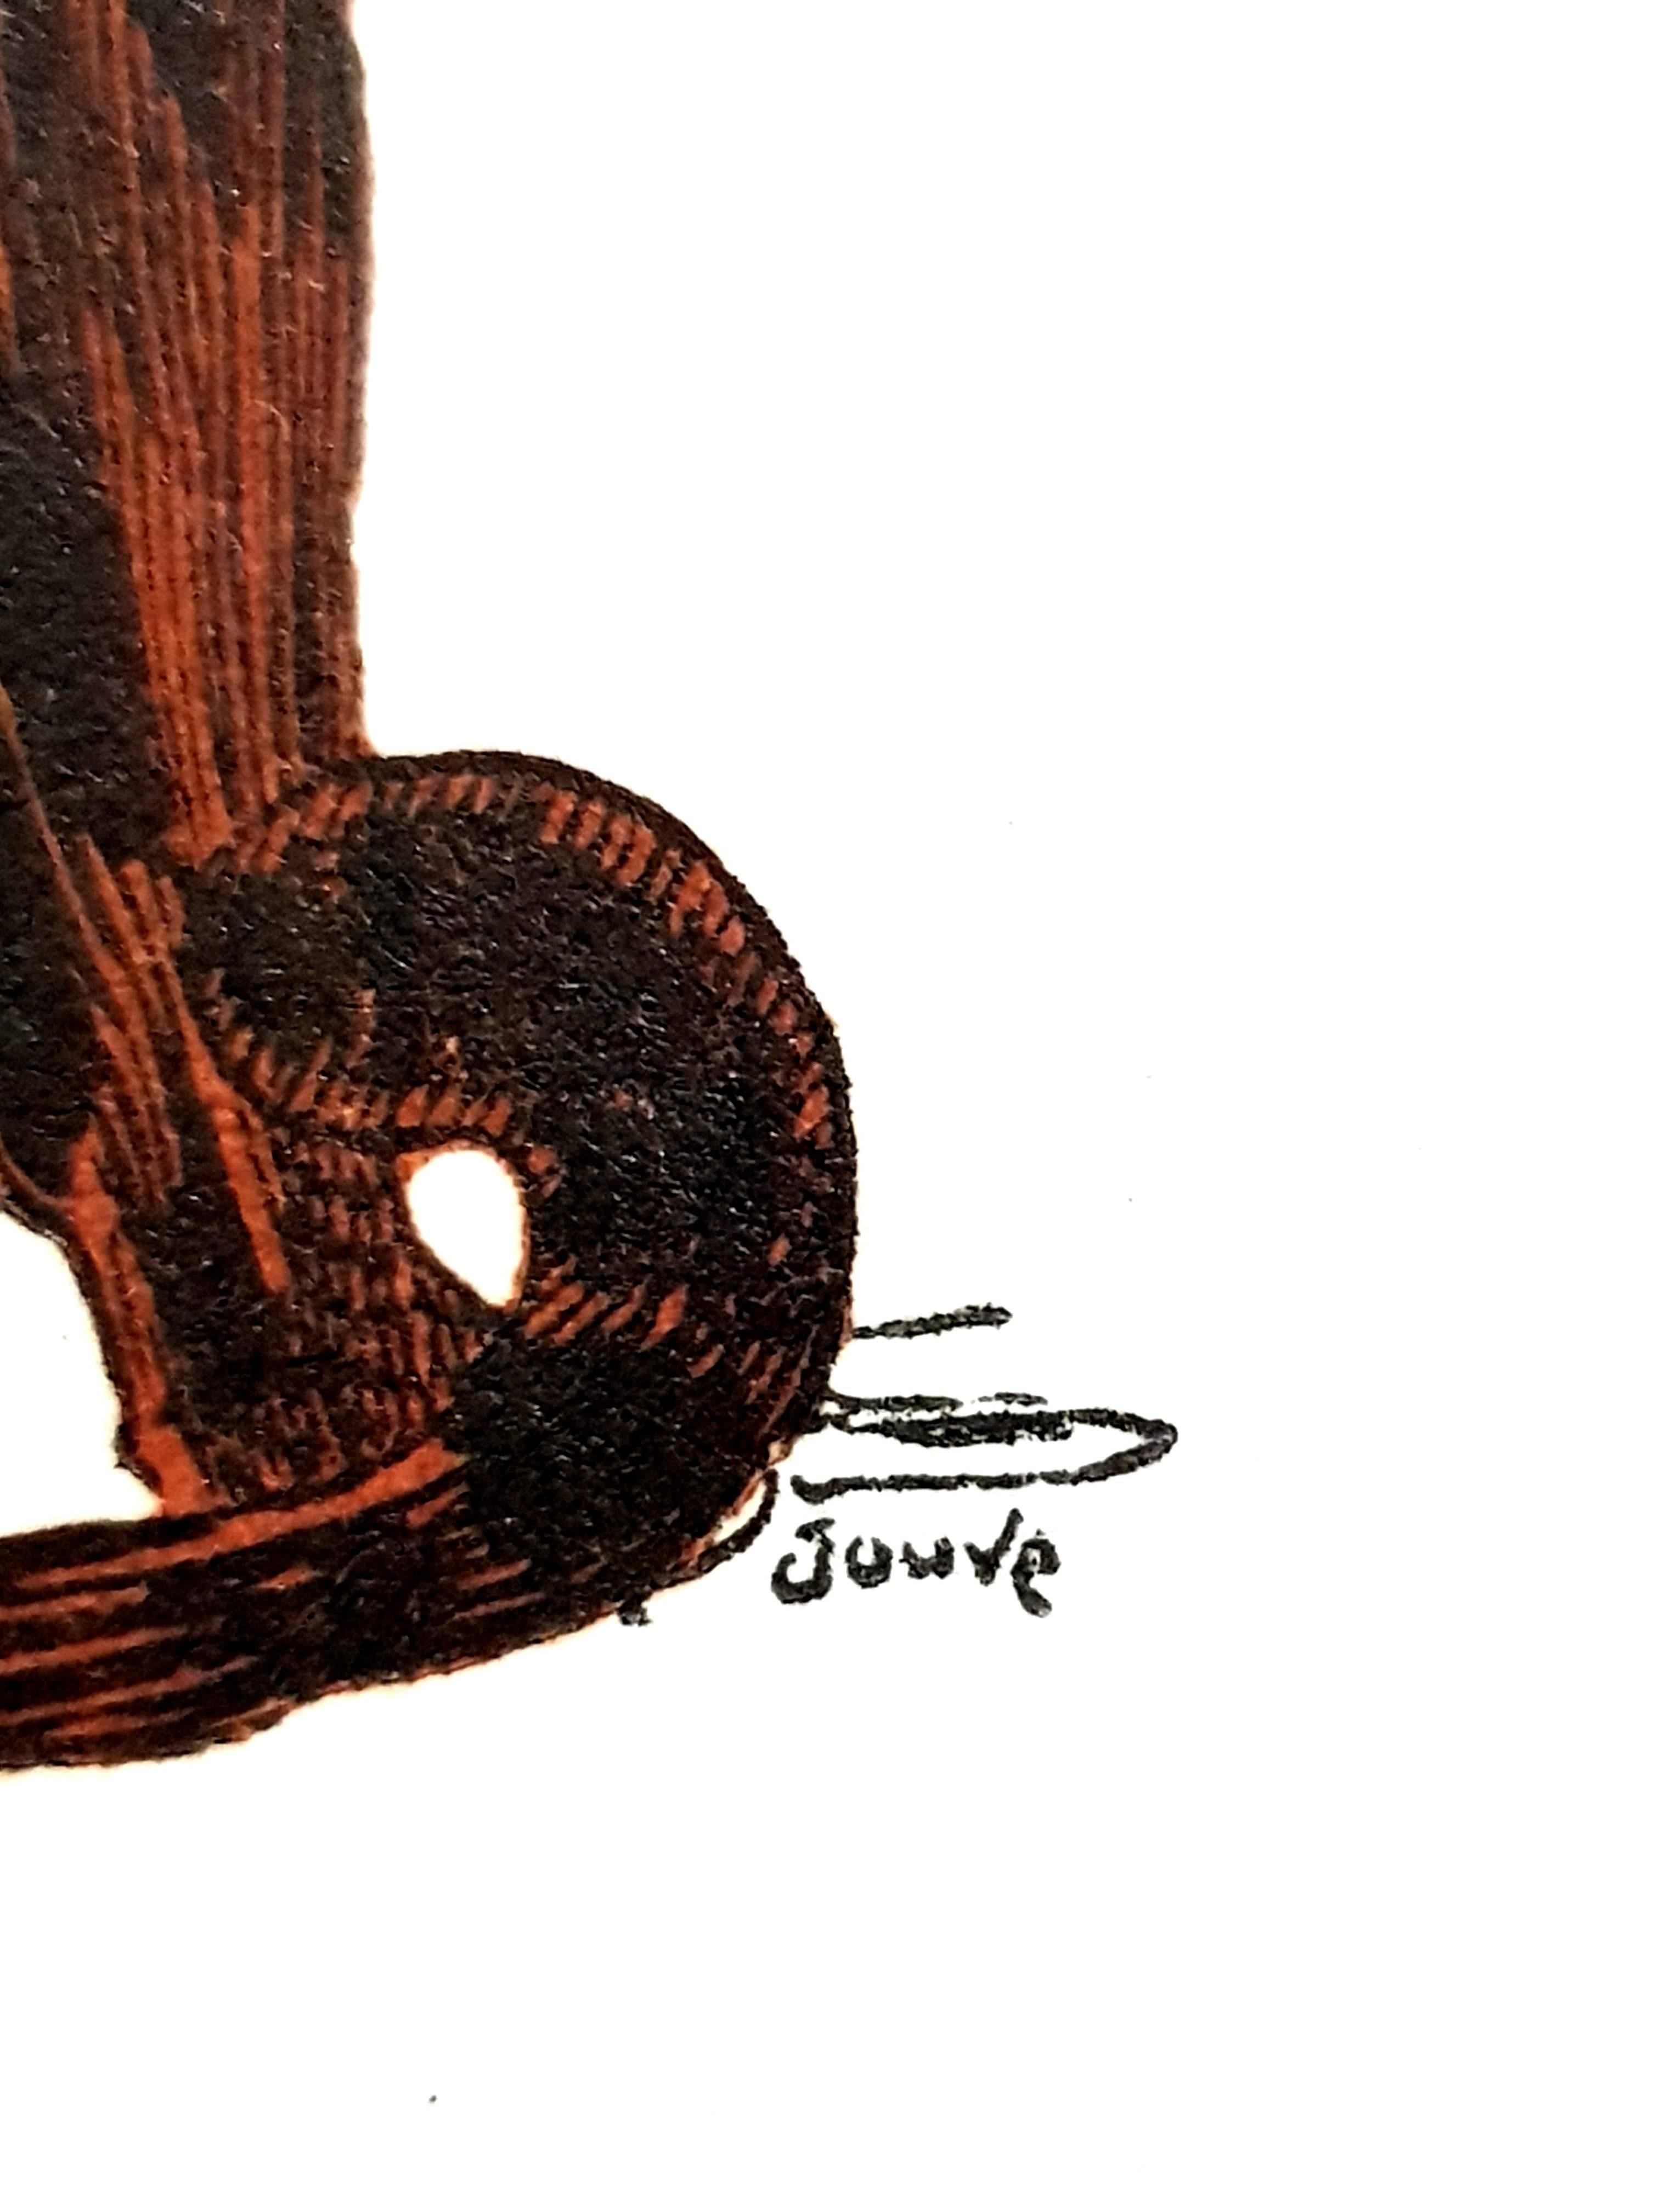 Paul Jouve - Tiger - Original Engraving - Print by Pierre-Paul Jouve